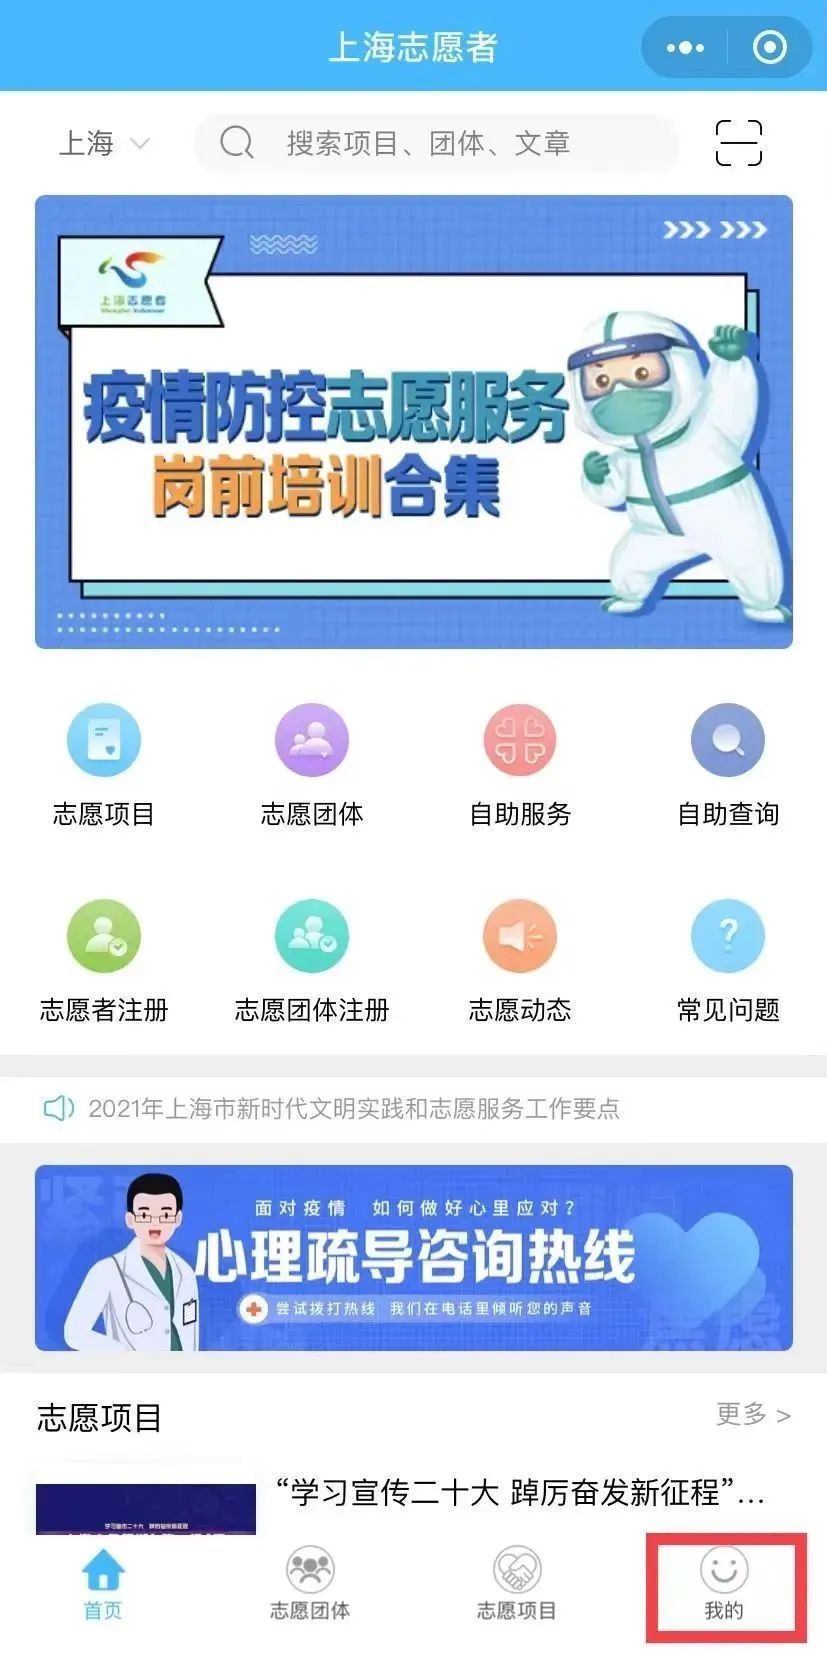 人脸识别也能登录账号啦！“上海志愿者”微信小程序功能升级